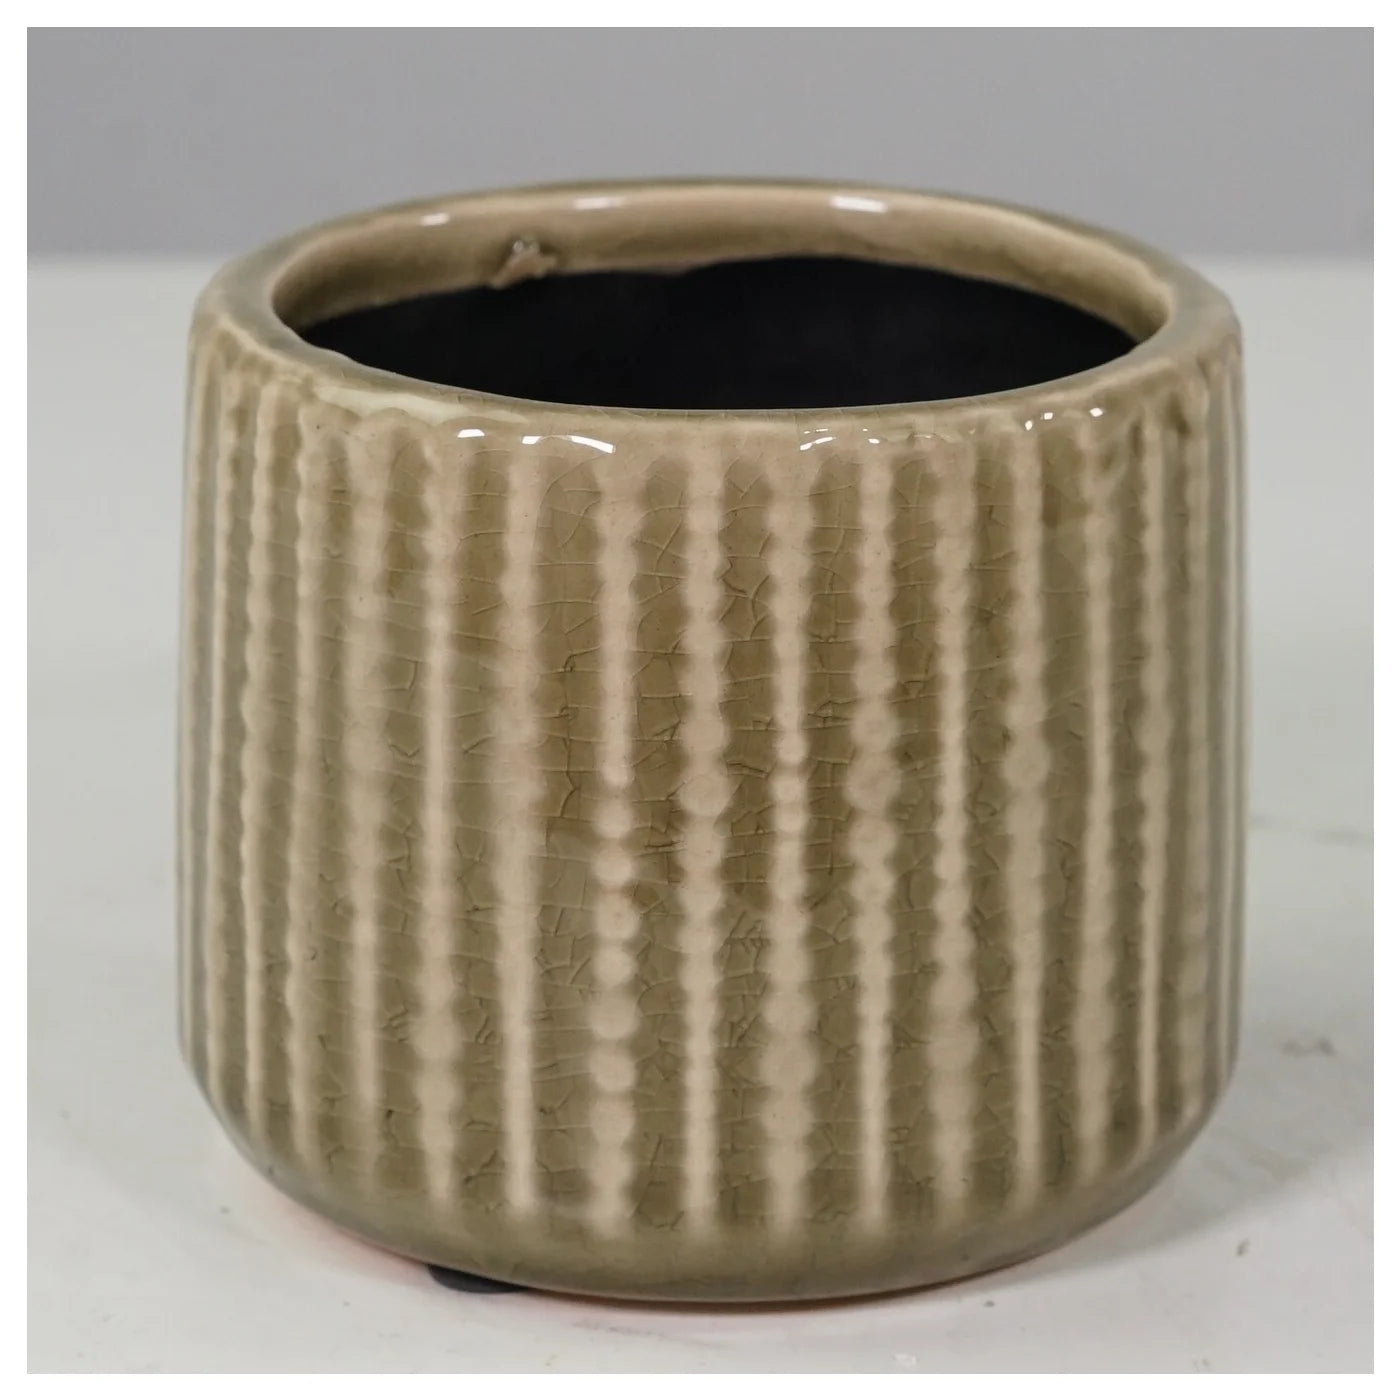 Green/Brown Glazed Ceramic Pot